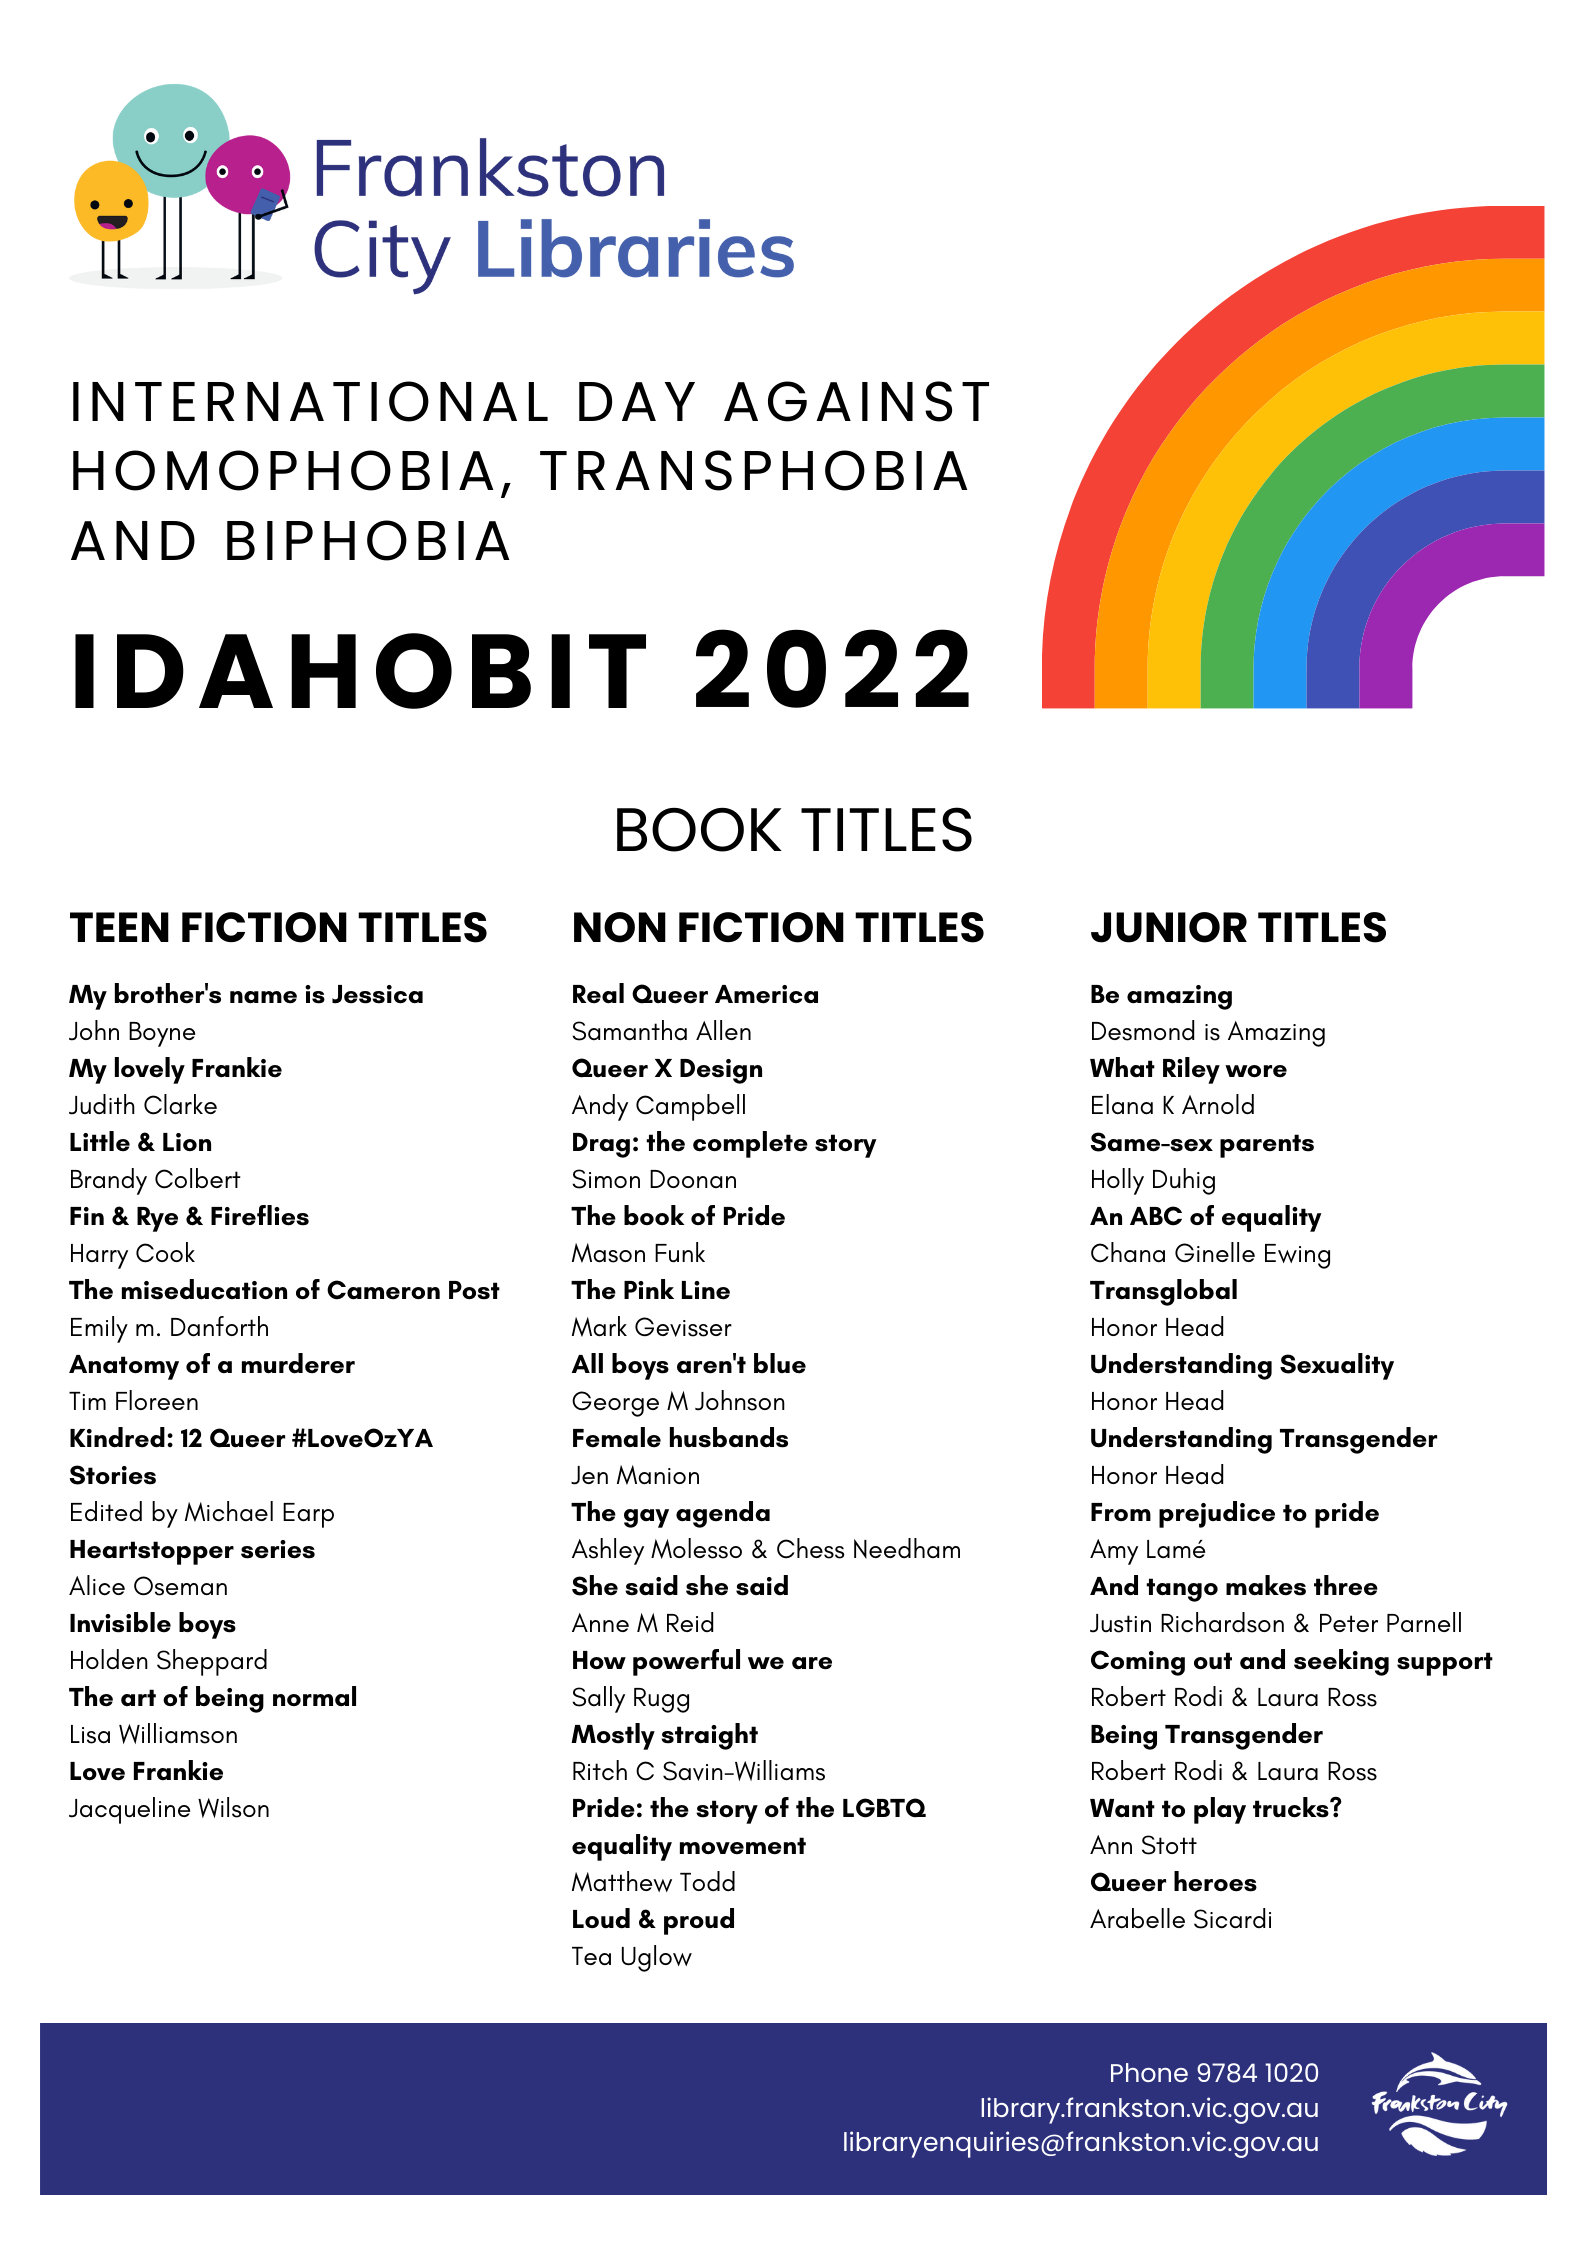 IDAHOBIT 2022 Book Titles poster.png